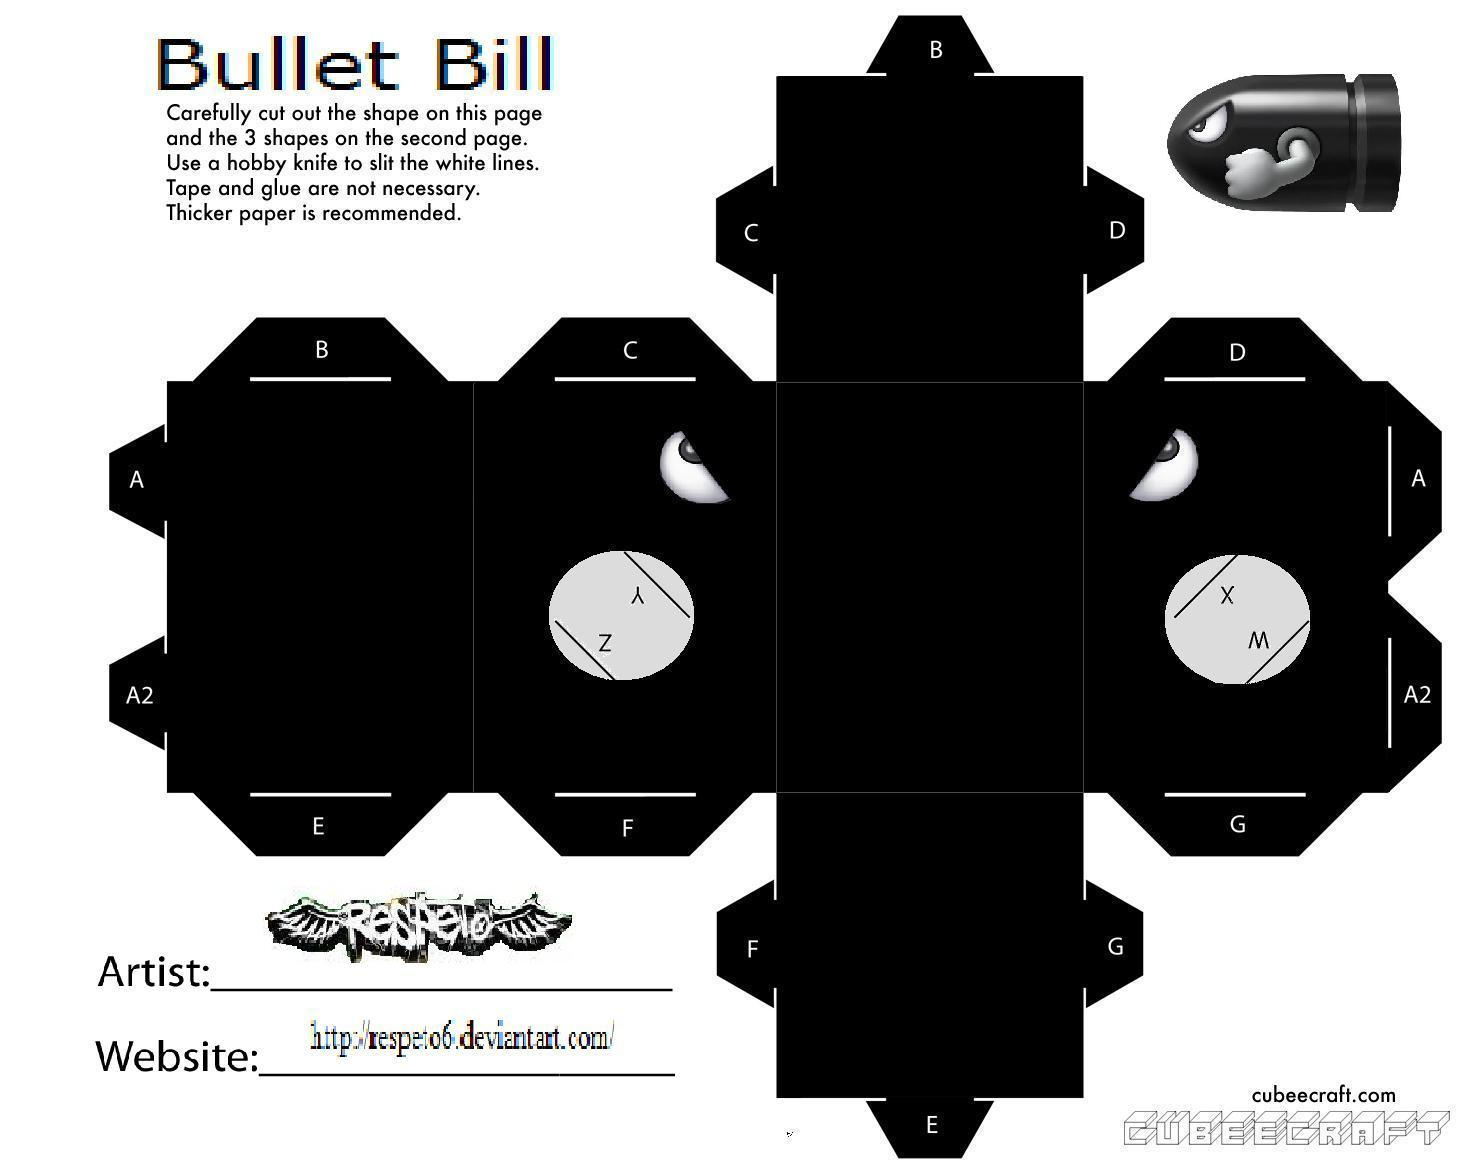 Bill Bullet